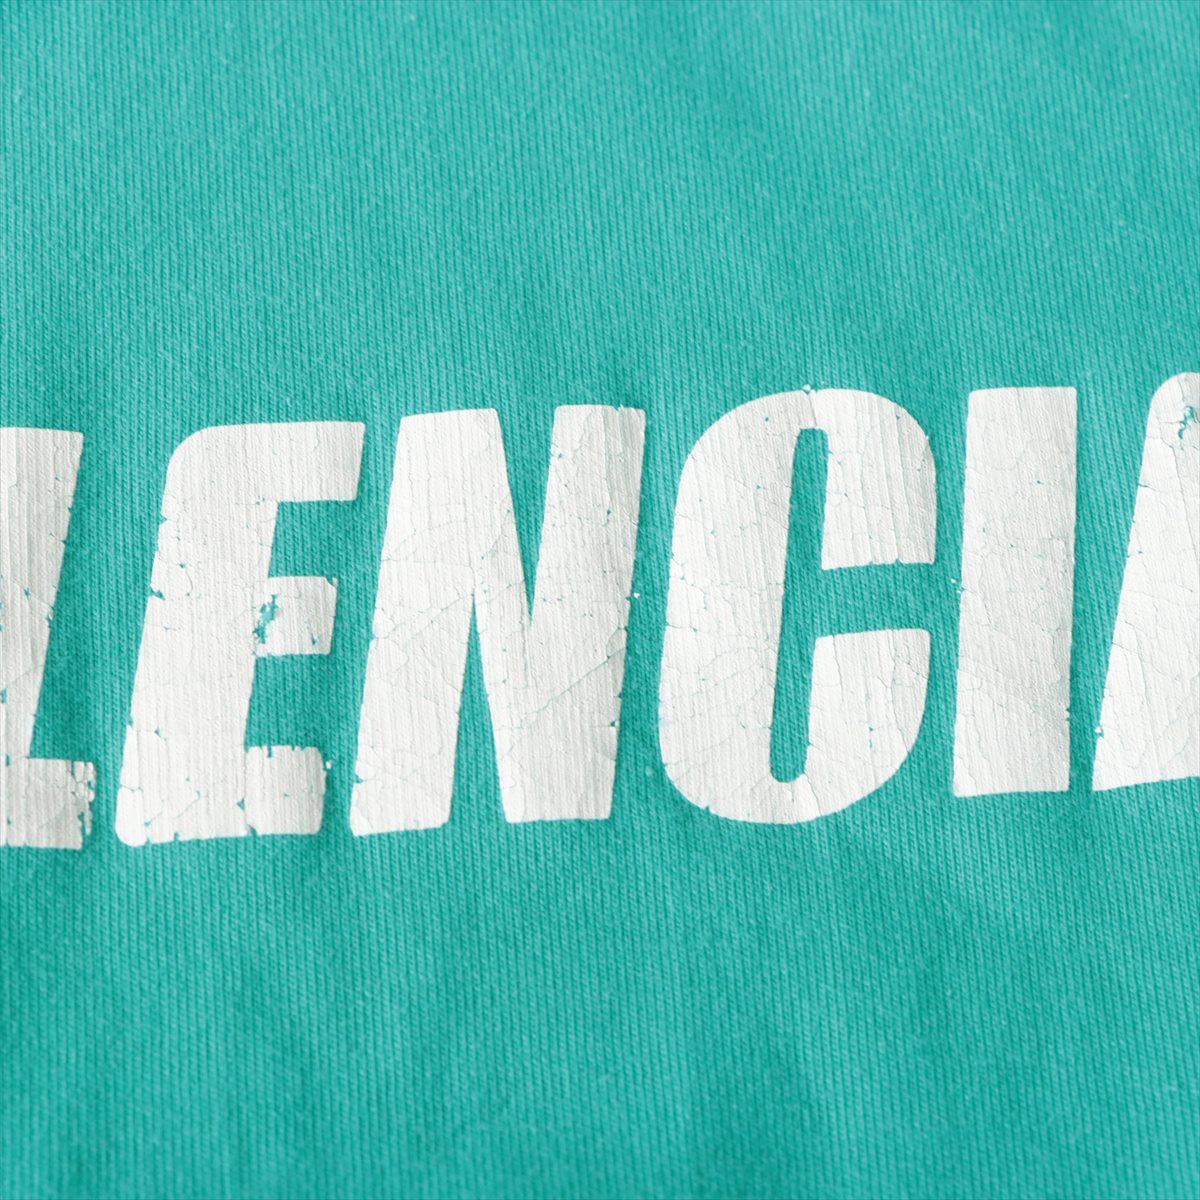 バレンシアガ21SSバックロゴオーバーサイズTシャツ / 1バレンシアガ